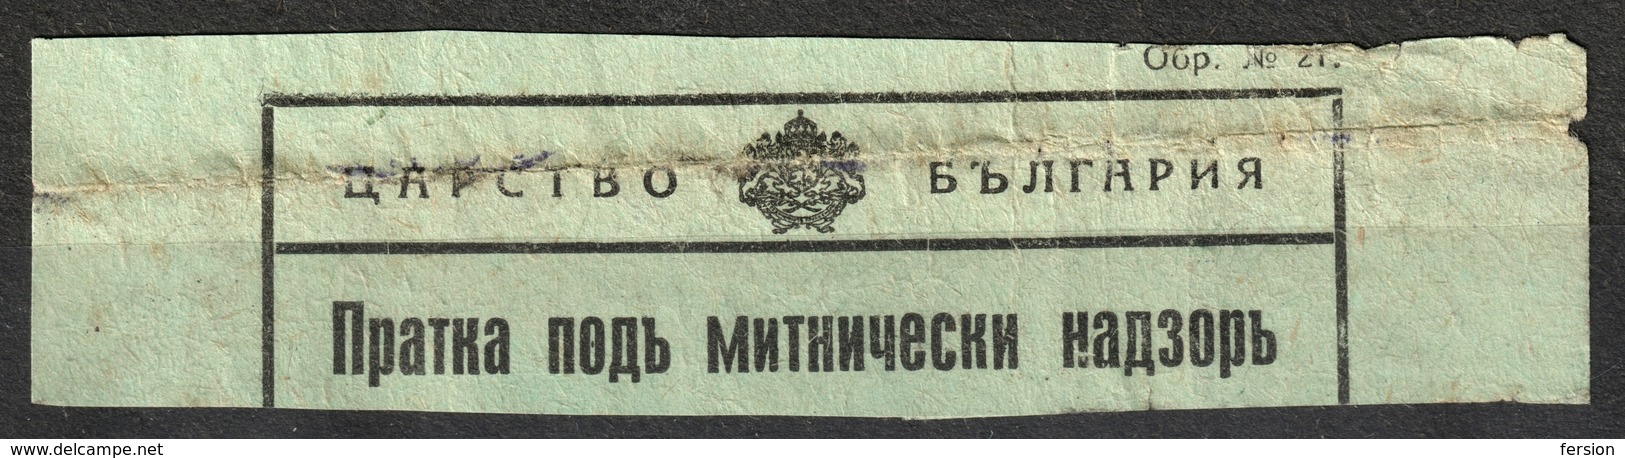 BULGARIA 1930's - Railway Customs Declaration - DÉCLARATION EN DOUANE / LABEL VIGNETTE - Used - Official Stamps